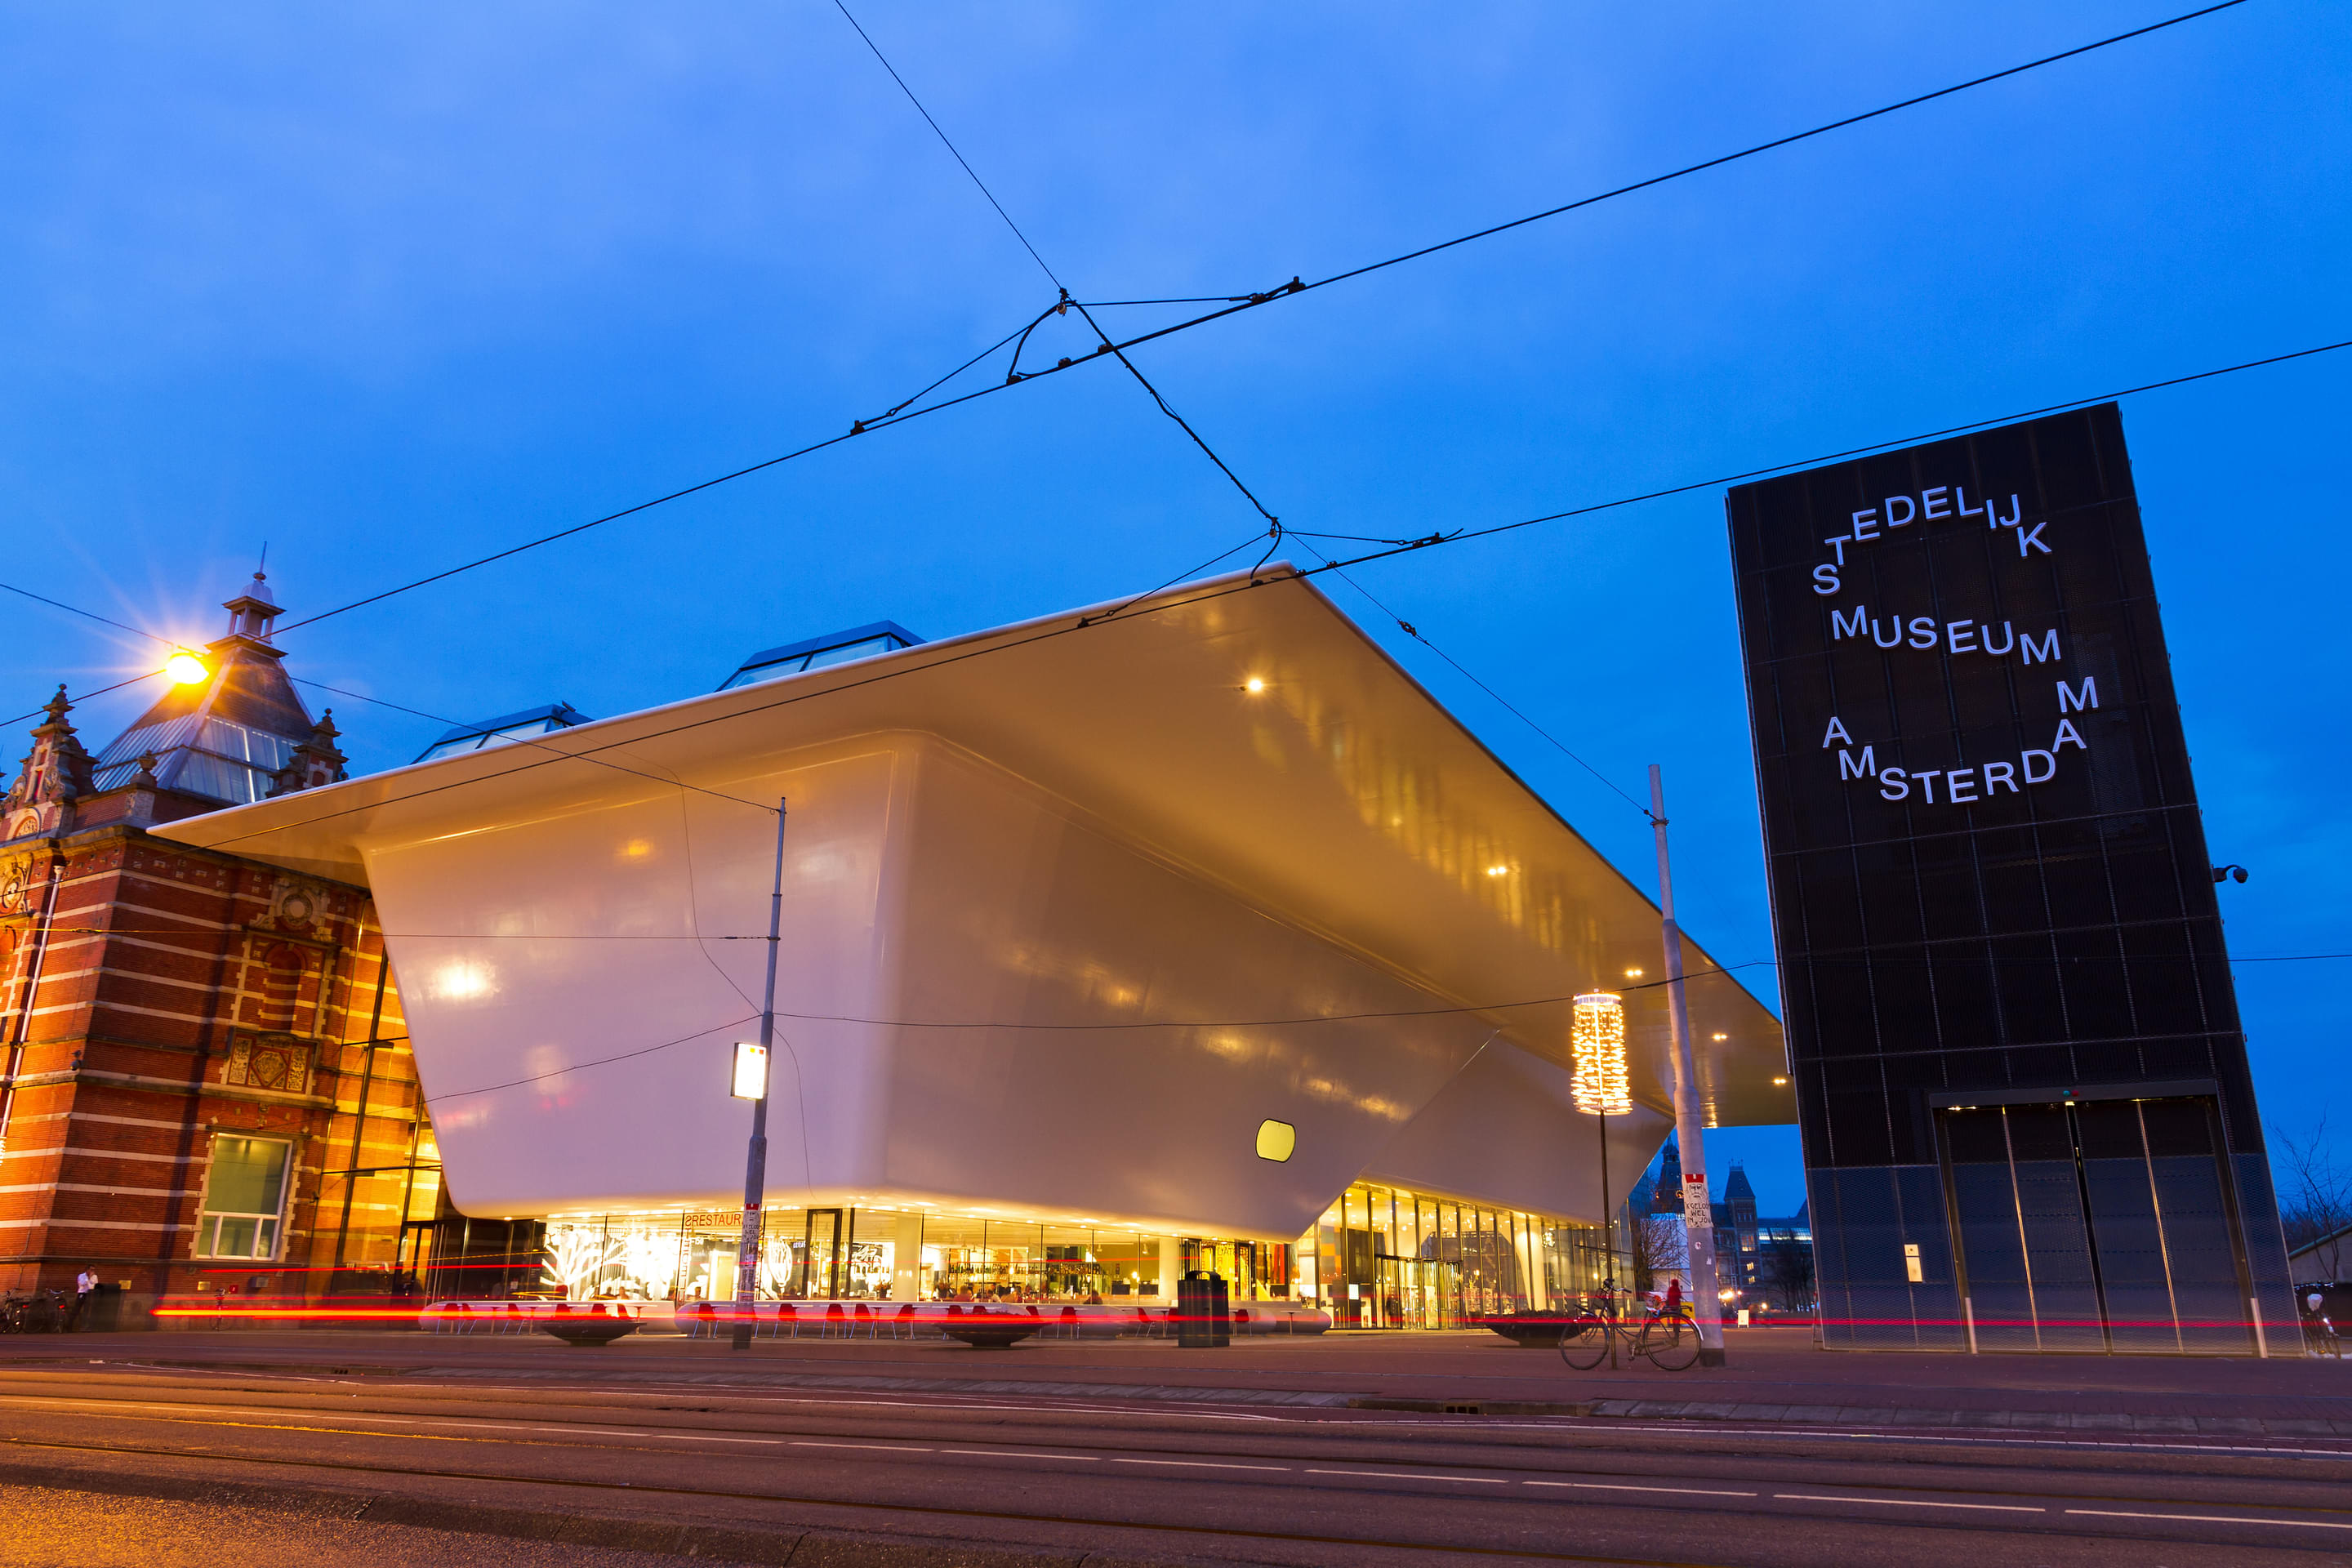 Stedelijk Museum Overview